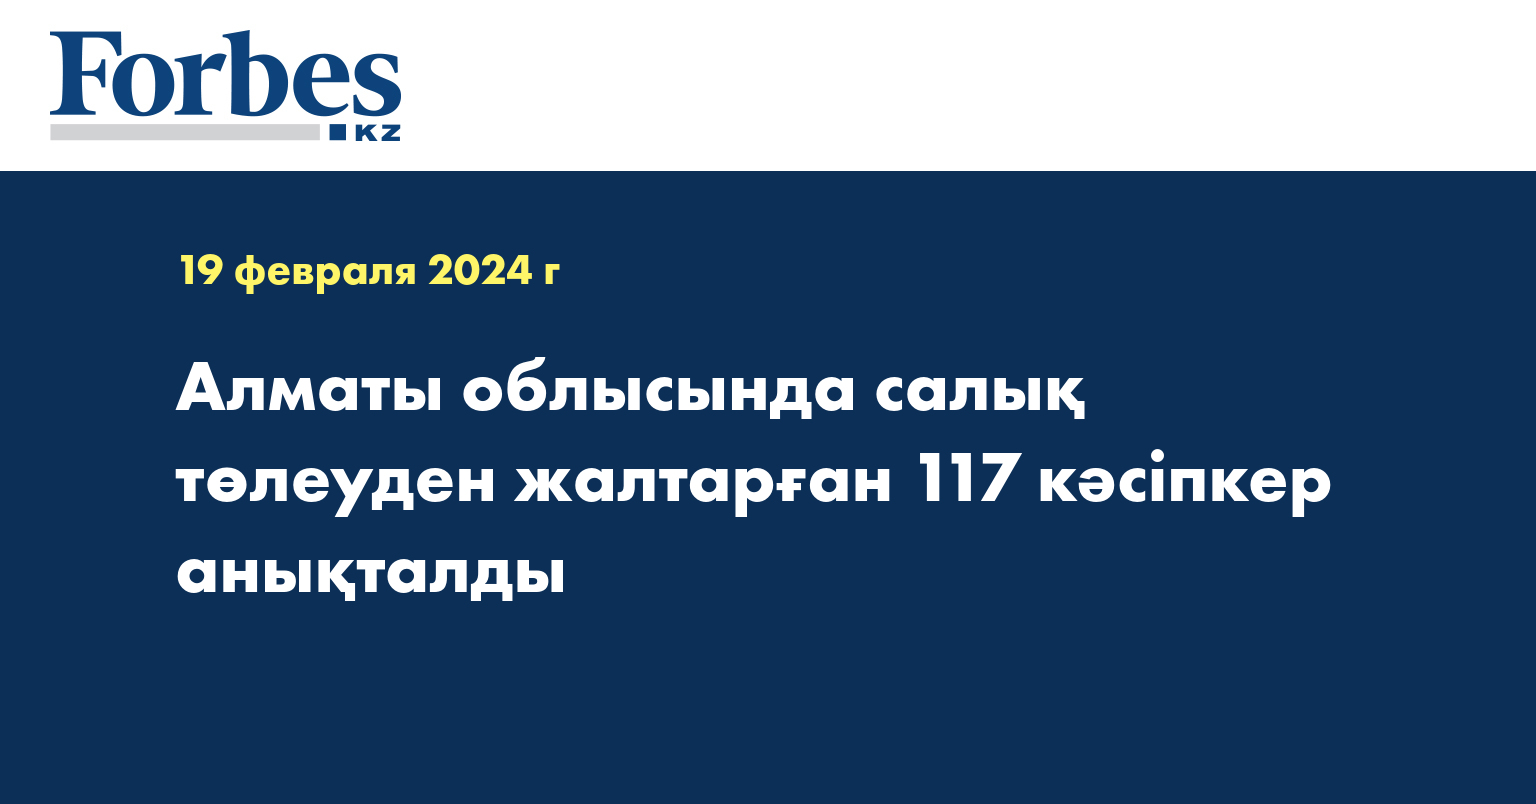 Алматы облысында салық төлеуден жалтарған 117 кәсіпкер анықталды